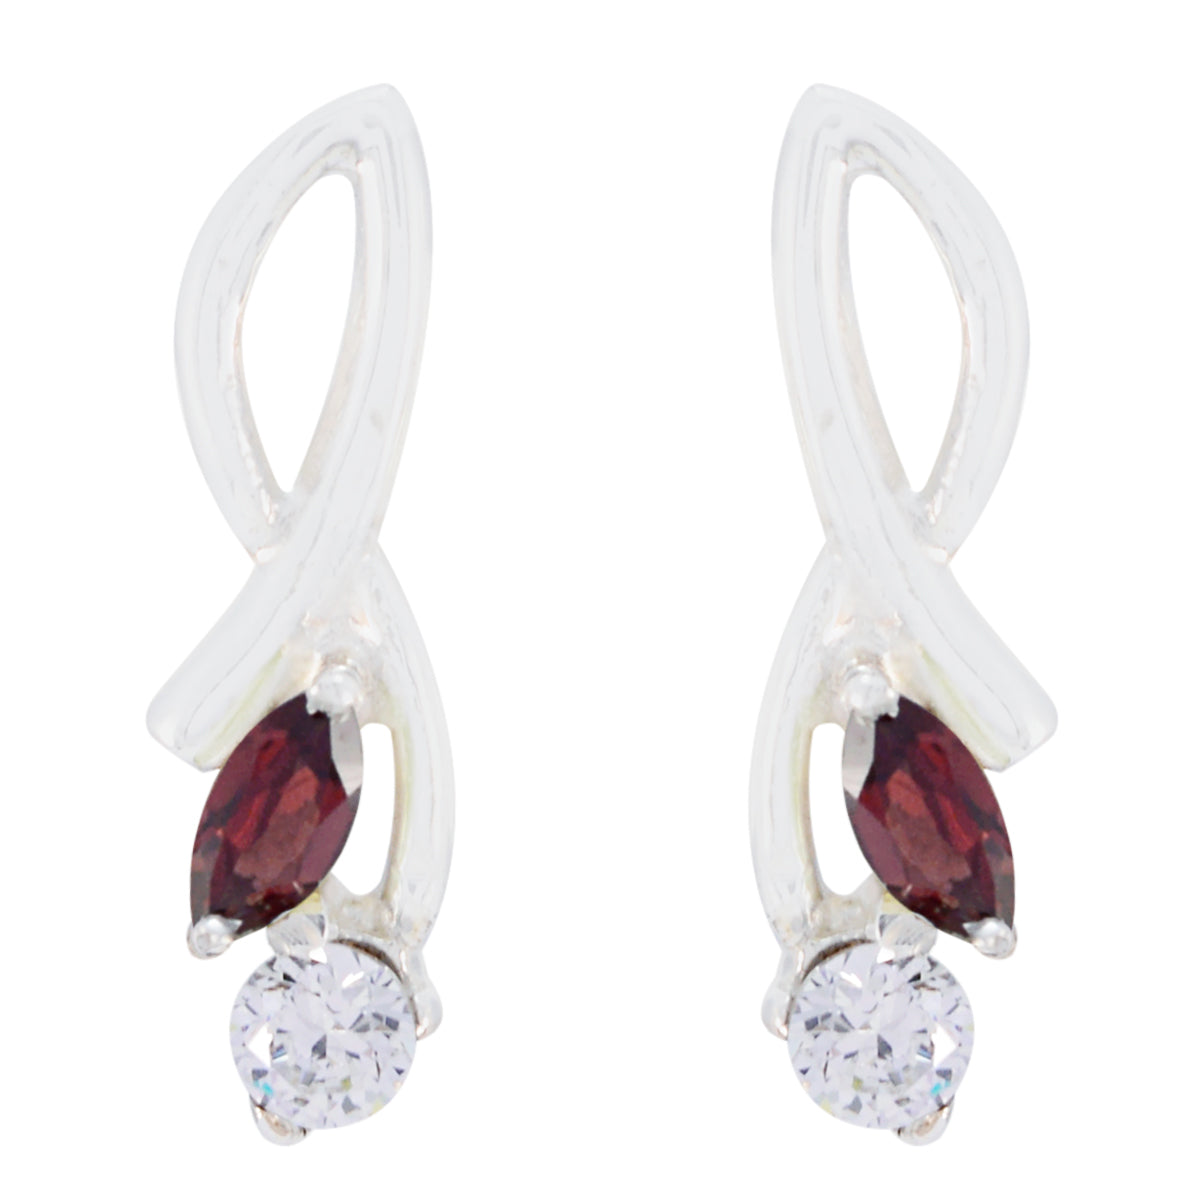 Riyo Nice Gemstone multi shape Faceted Red Garnet Silver Earrings gift for teacher's day